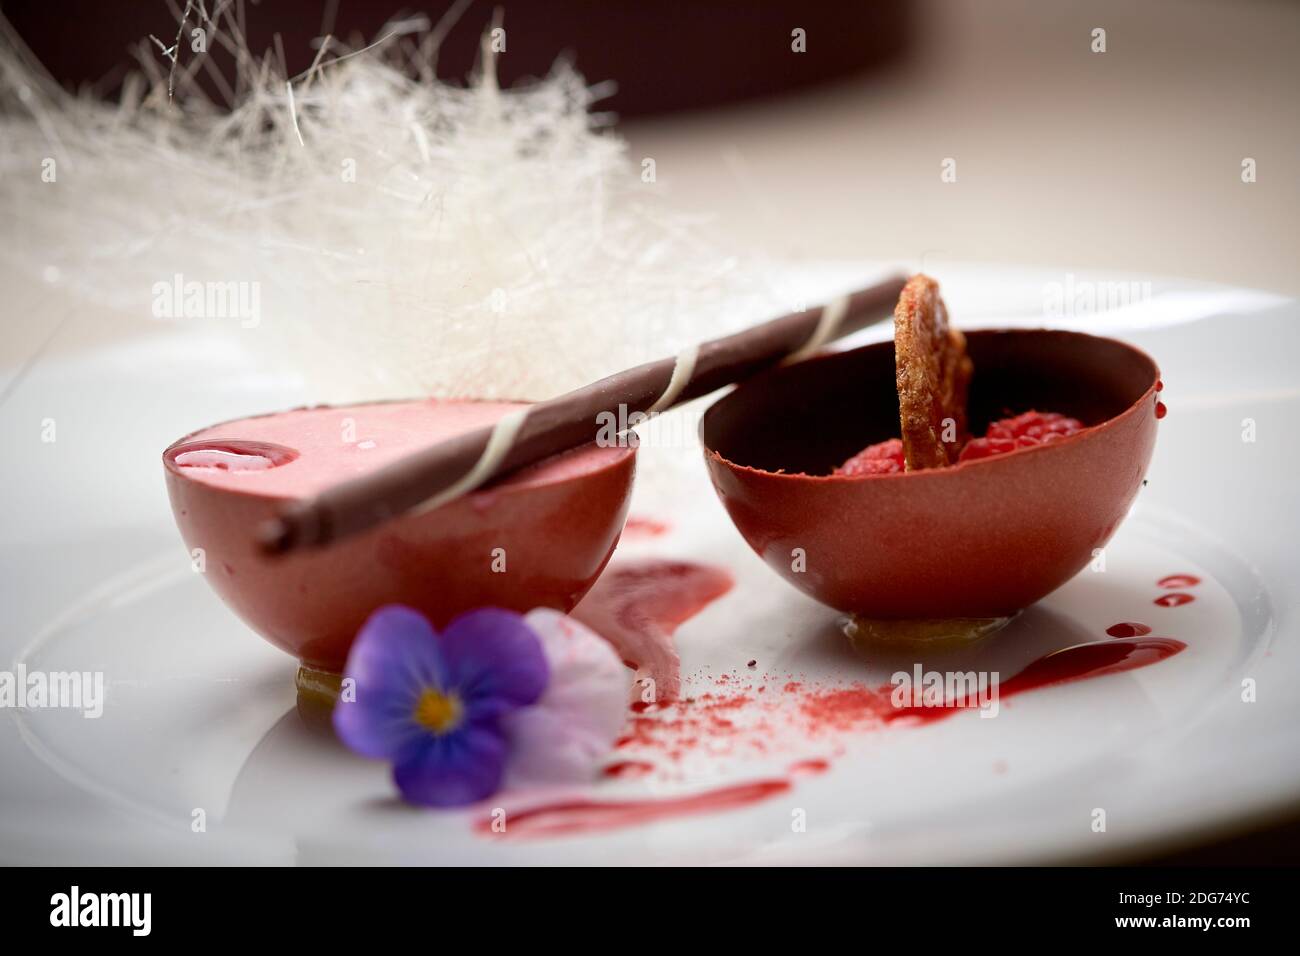 Mousse de framboise dans une sphère de chocolat avec des boucles de chocolat blanc et un coulis de framboise Banque D'Images